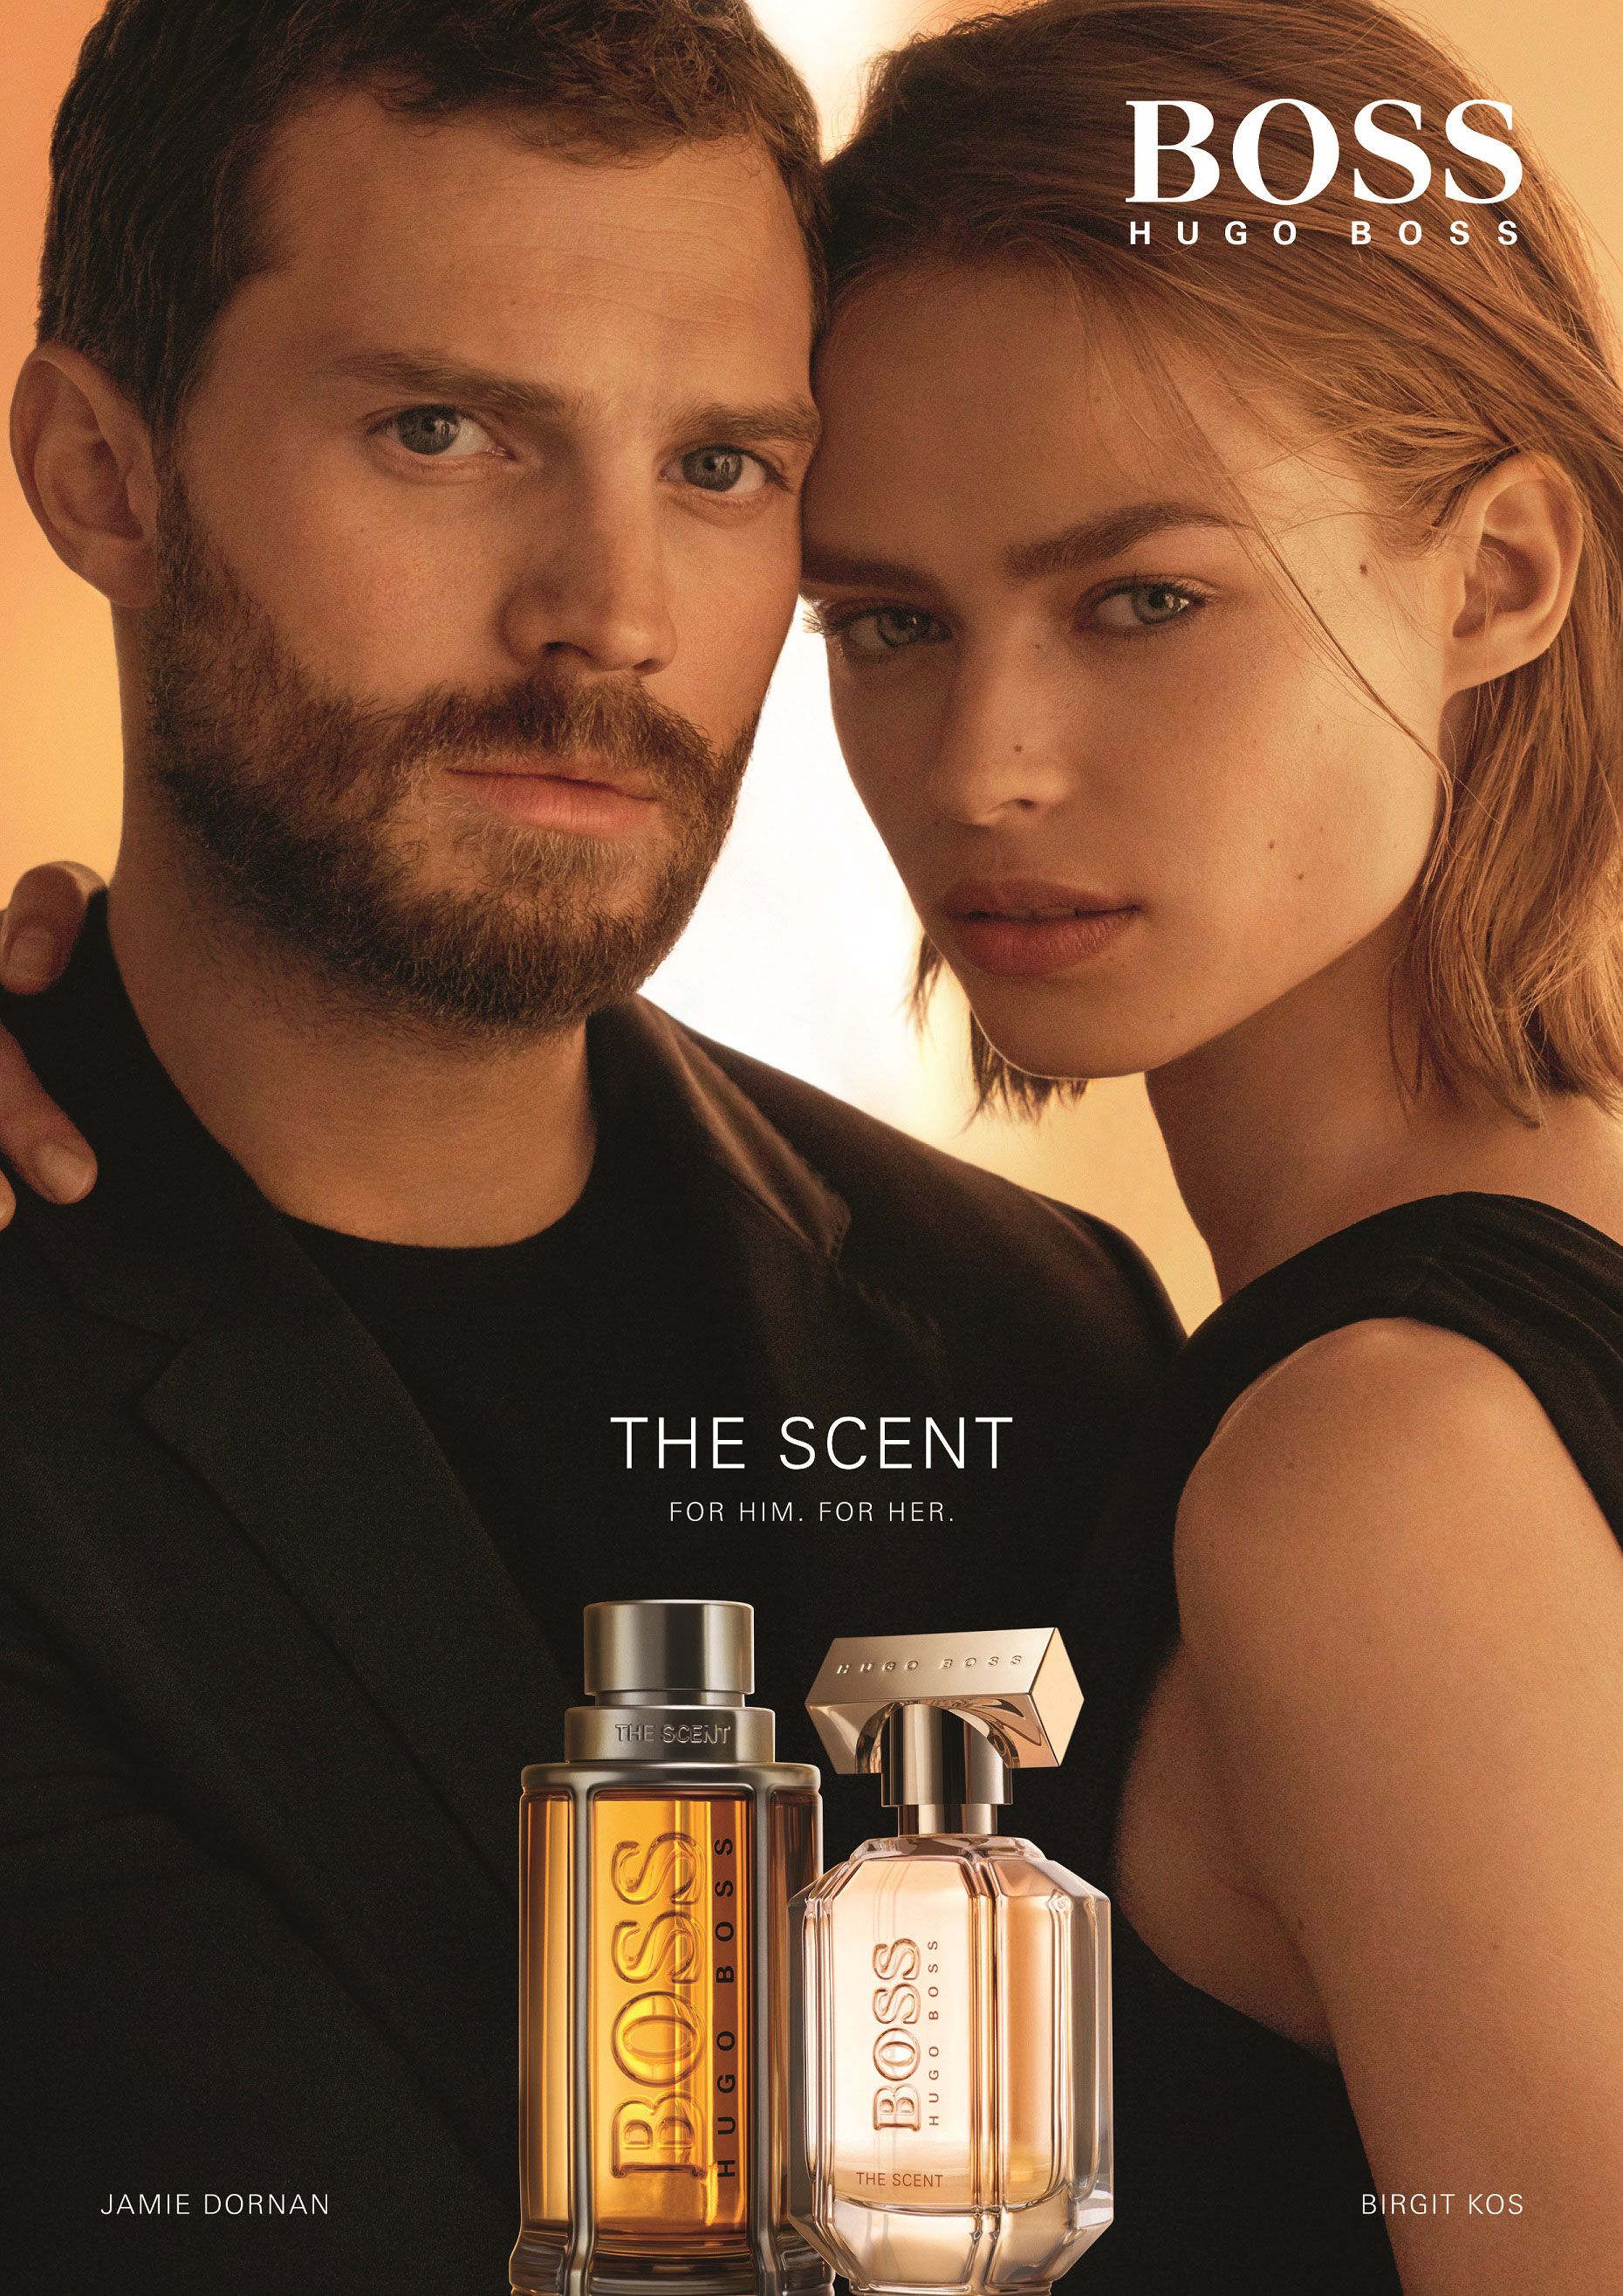 Jamie Dornan and Birgit Star in Hugo Boss Fragrance Ad